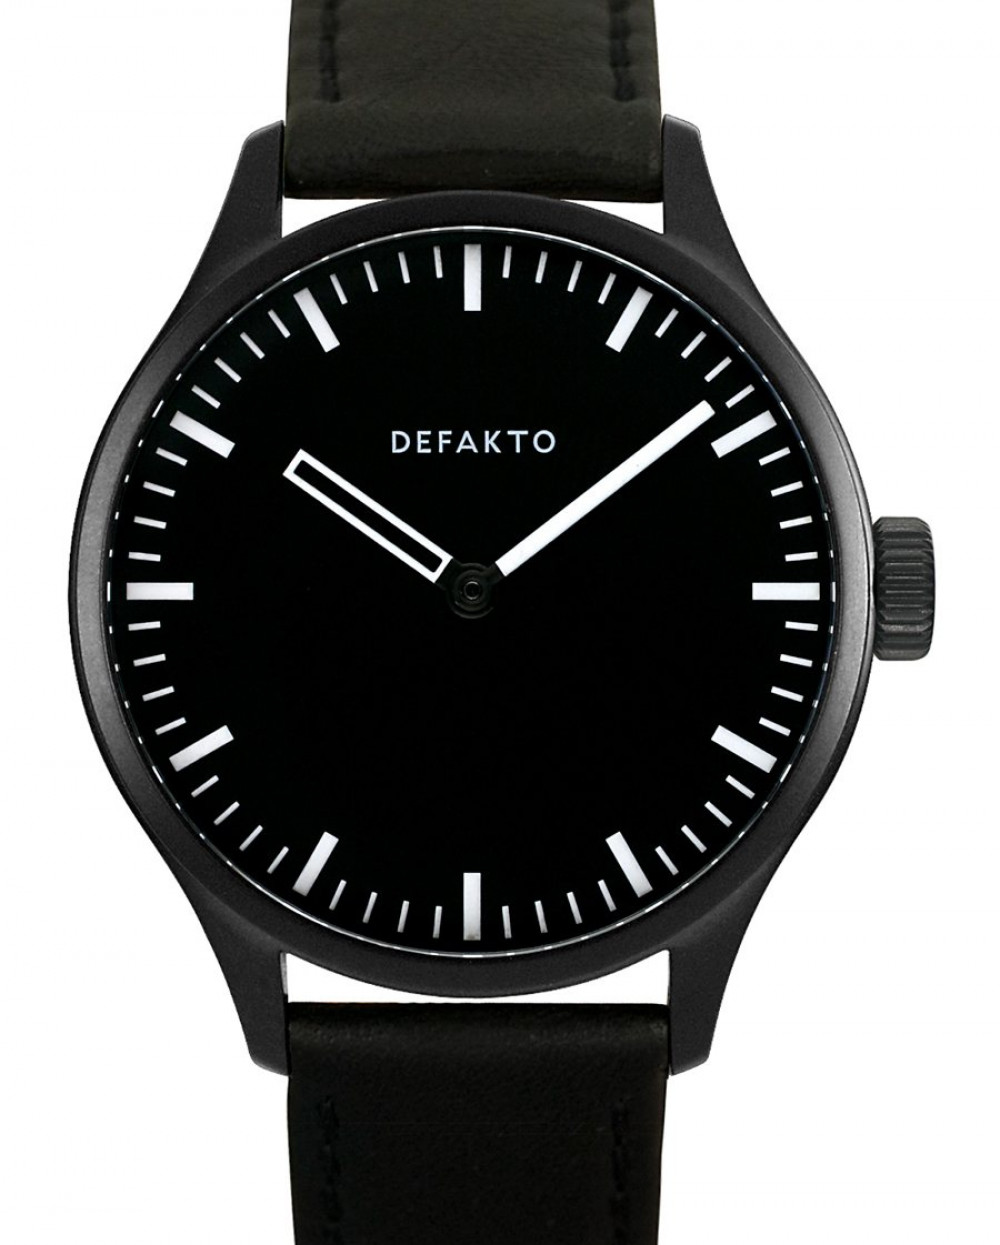 Zegarek firmy Defakto, model Akkord PVD